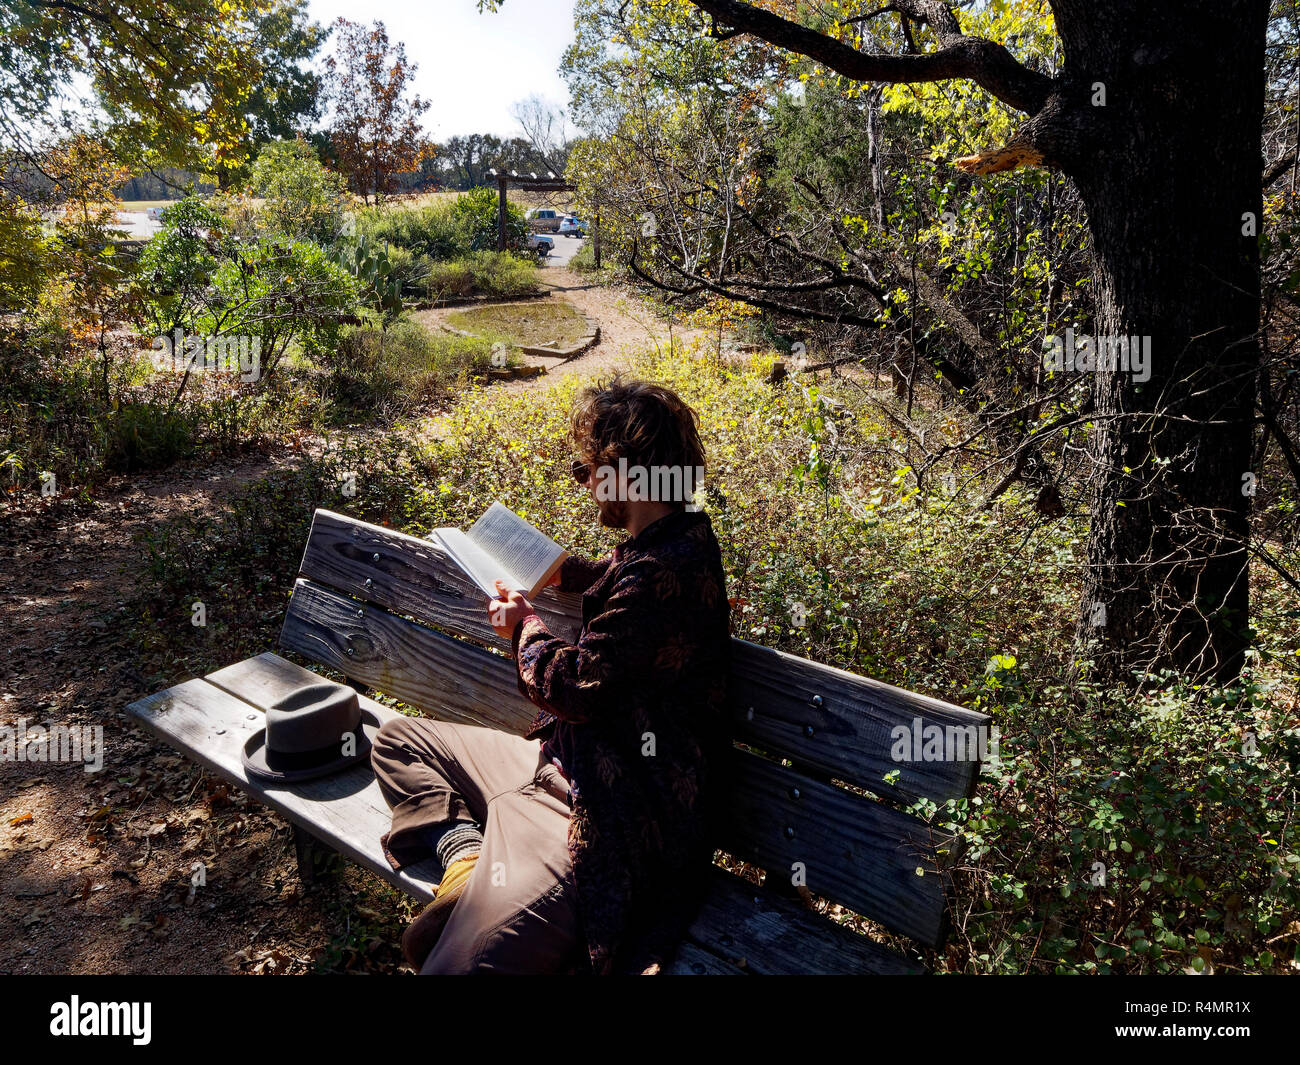 Milinial Mann erhält außerhalb in einem Park mit einheimischen Pflanzen zu lesen, noch nicht von der Hektik des urbanen Lebens umgeben. Stockfoto